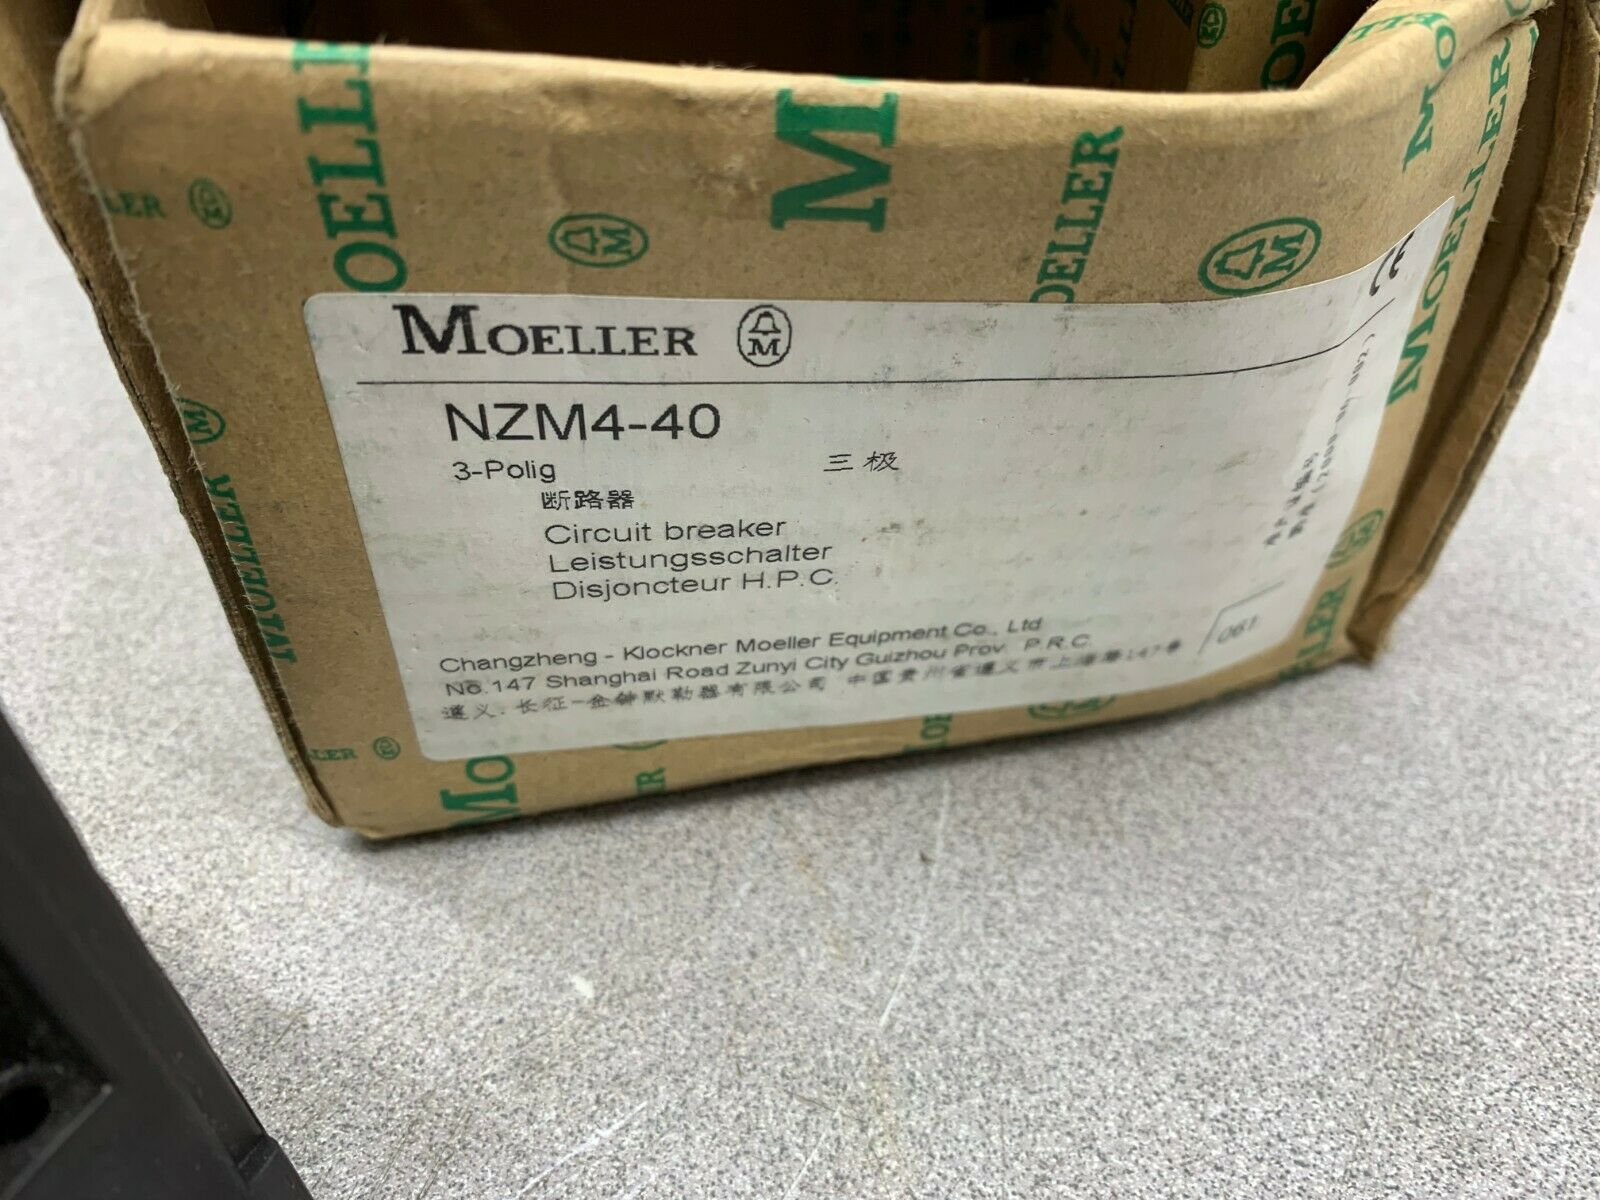 NEW IN BOX MOELLER CIRCUIT BREAKER NZM4-40